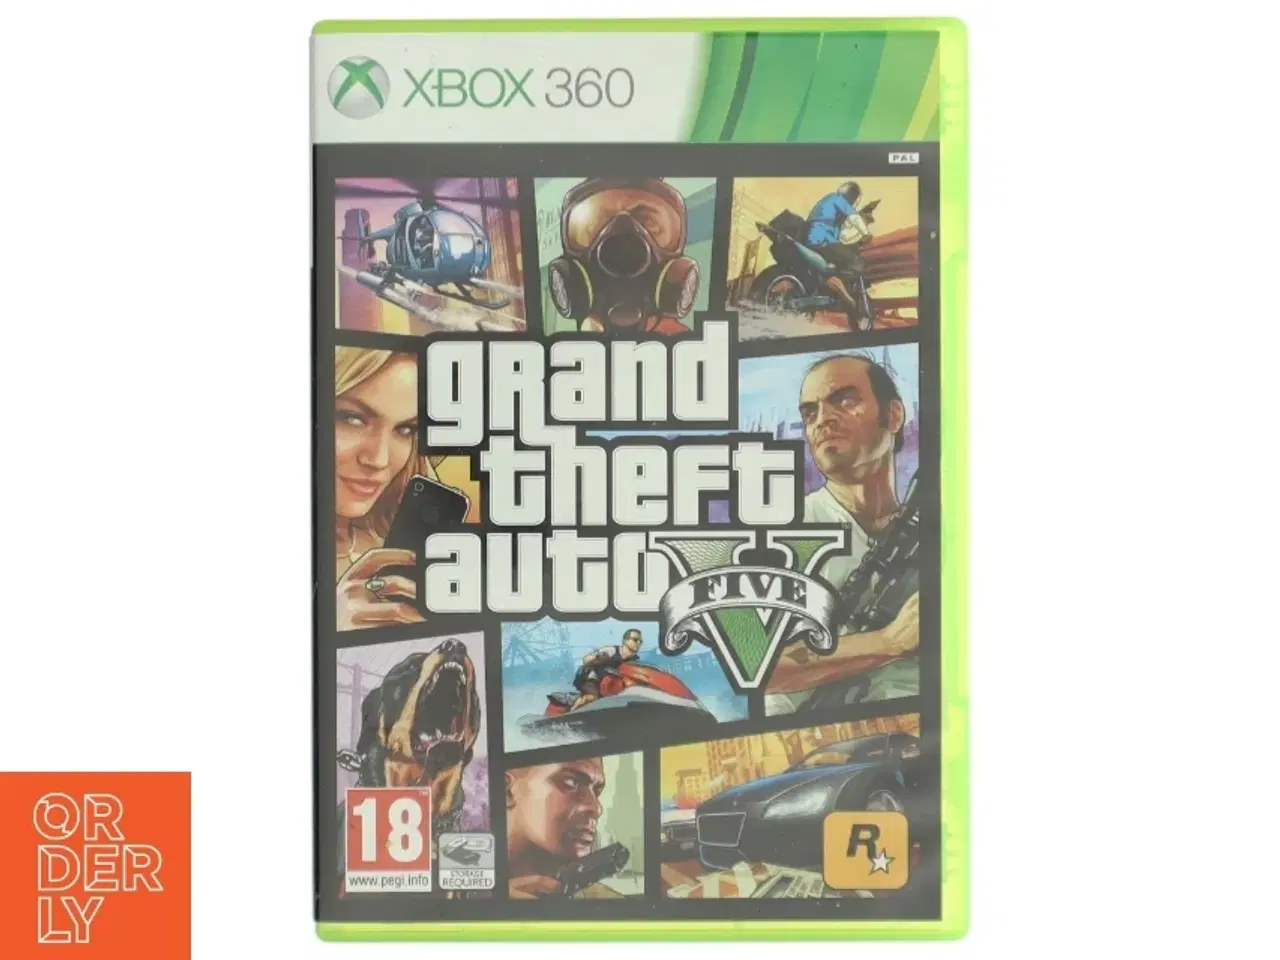 Billede 1 - Grand Theft Auto V (GTA 5) til Xbox 360 fra Rockstar Games